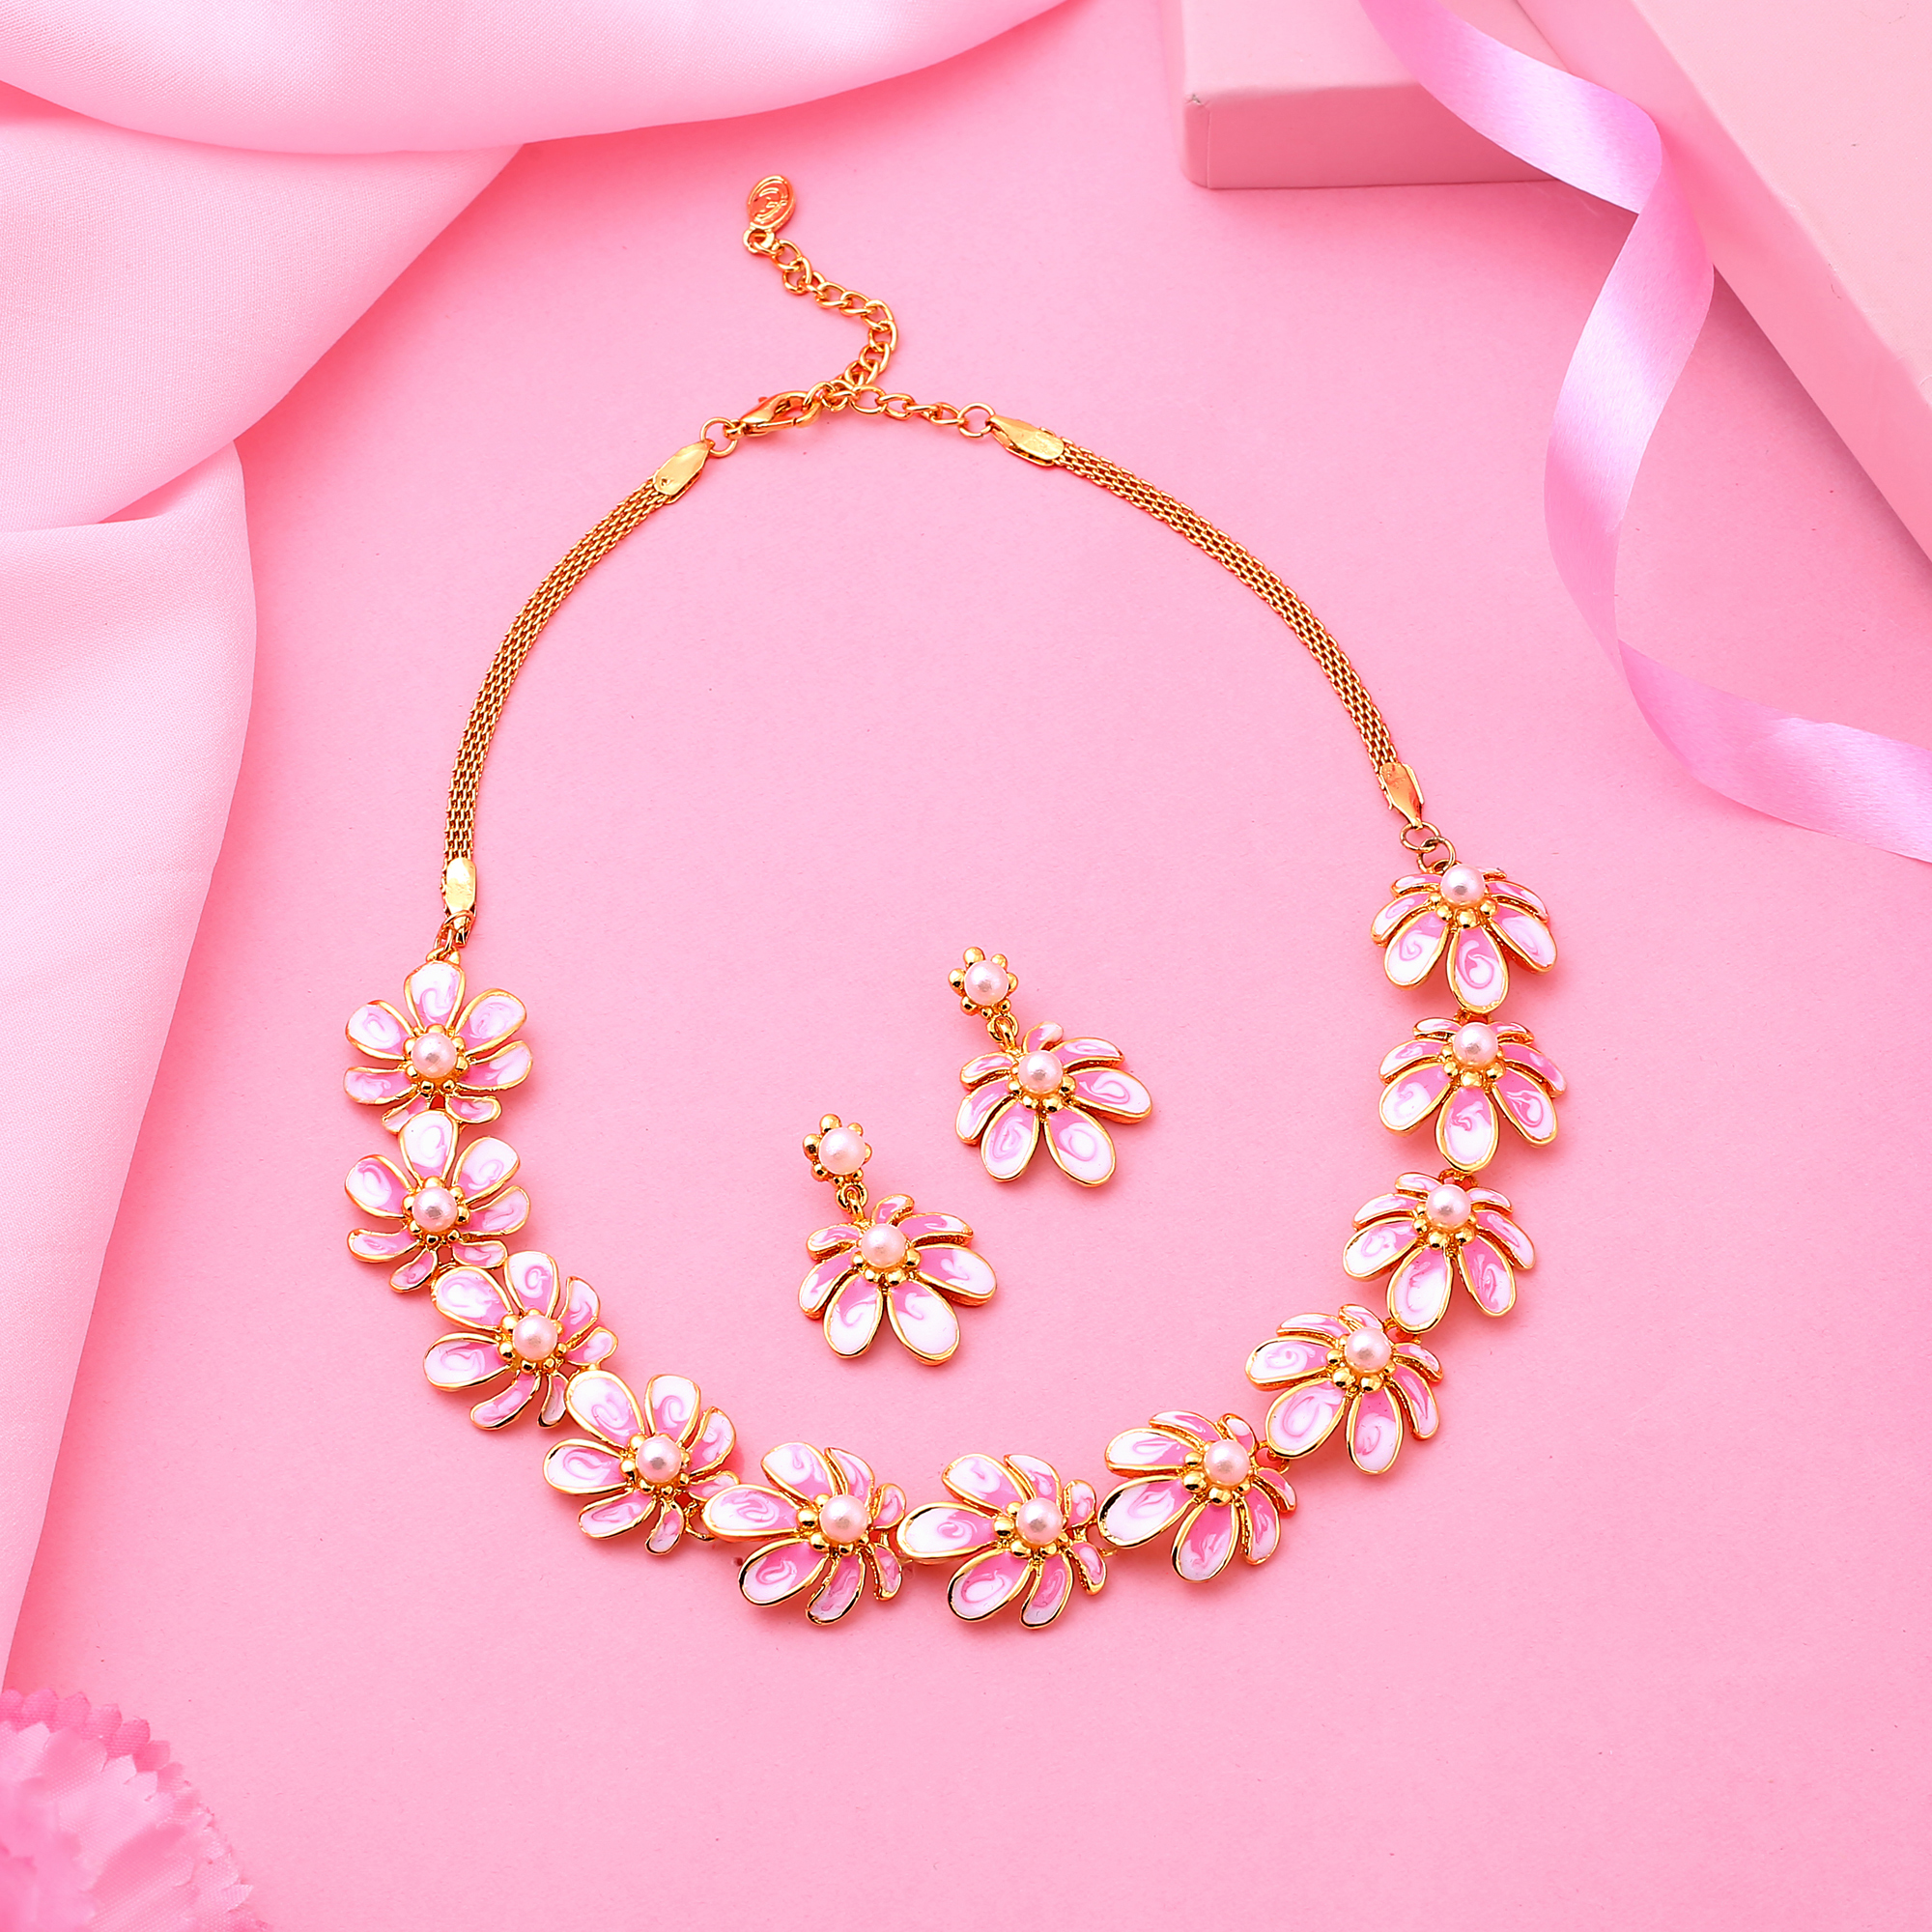 Estele Gold Plated Floret Designer Necklace Set with Austrian Crystals & Pink Enamel for Women